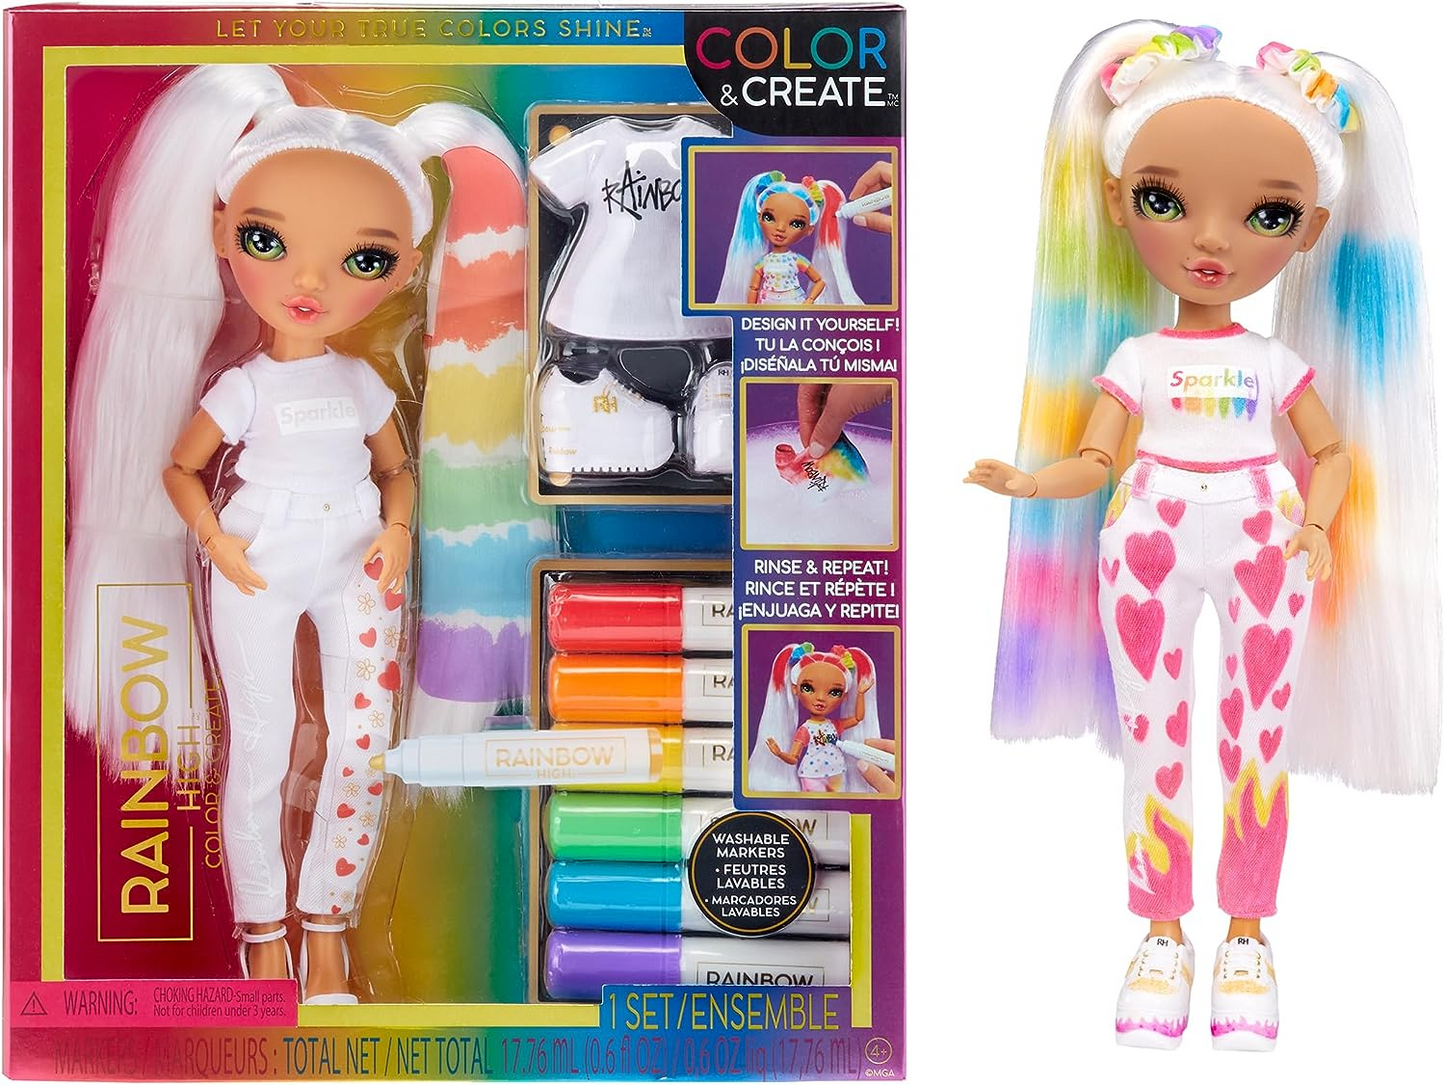 Rainbow High Colorir e criar boneca DIY moderna - olhos verdes, rabos de porco, blusa e sapatos bônus e marcadores de arco-íris laváveis - colorir, criar, brincar, enxaguar, repetir - para crianças de 4 a 12 anos e colecionadores